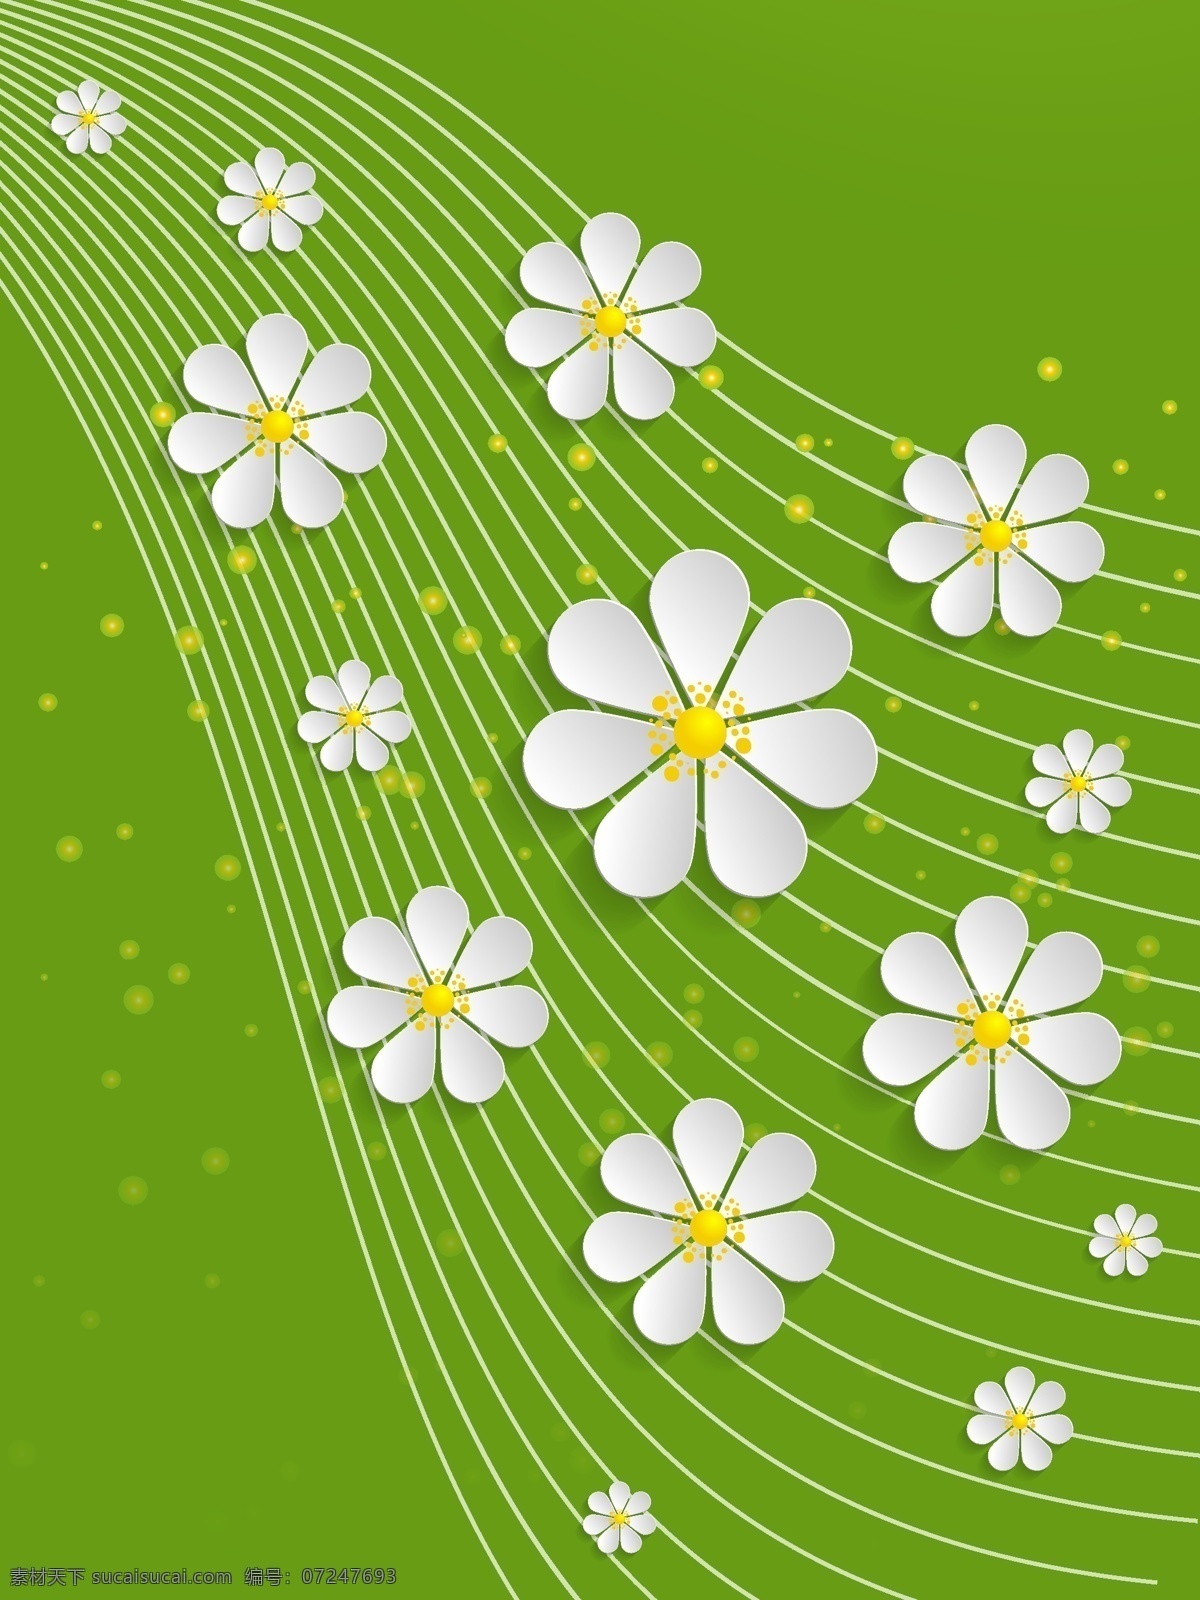 漩涡 背景 绿色 优雅 花卉 婚礼 古董 纹理 纸张 夏季 自然 花卉背景 绿色背景 壁纸 可爱 春天 艺术 色彩 图形